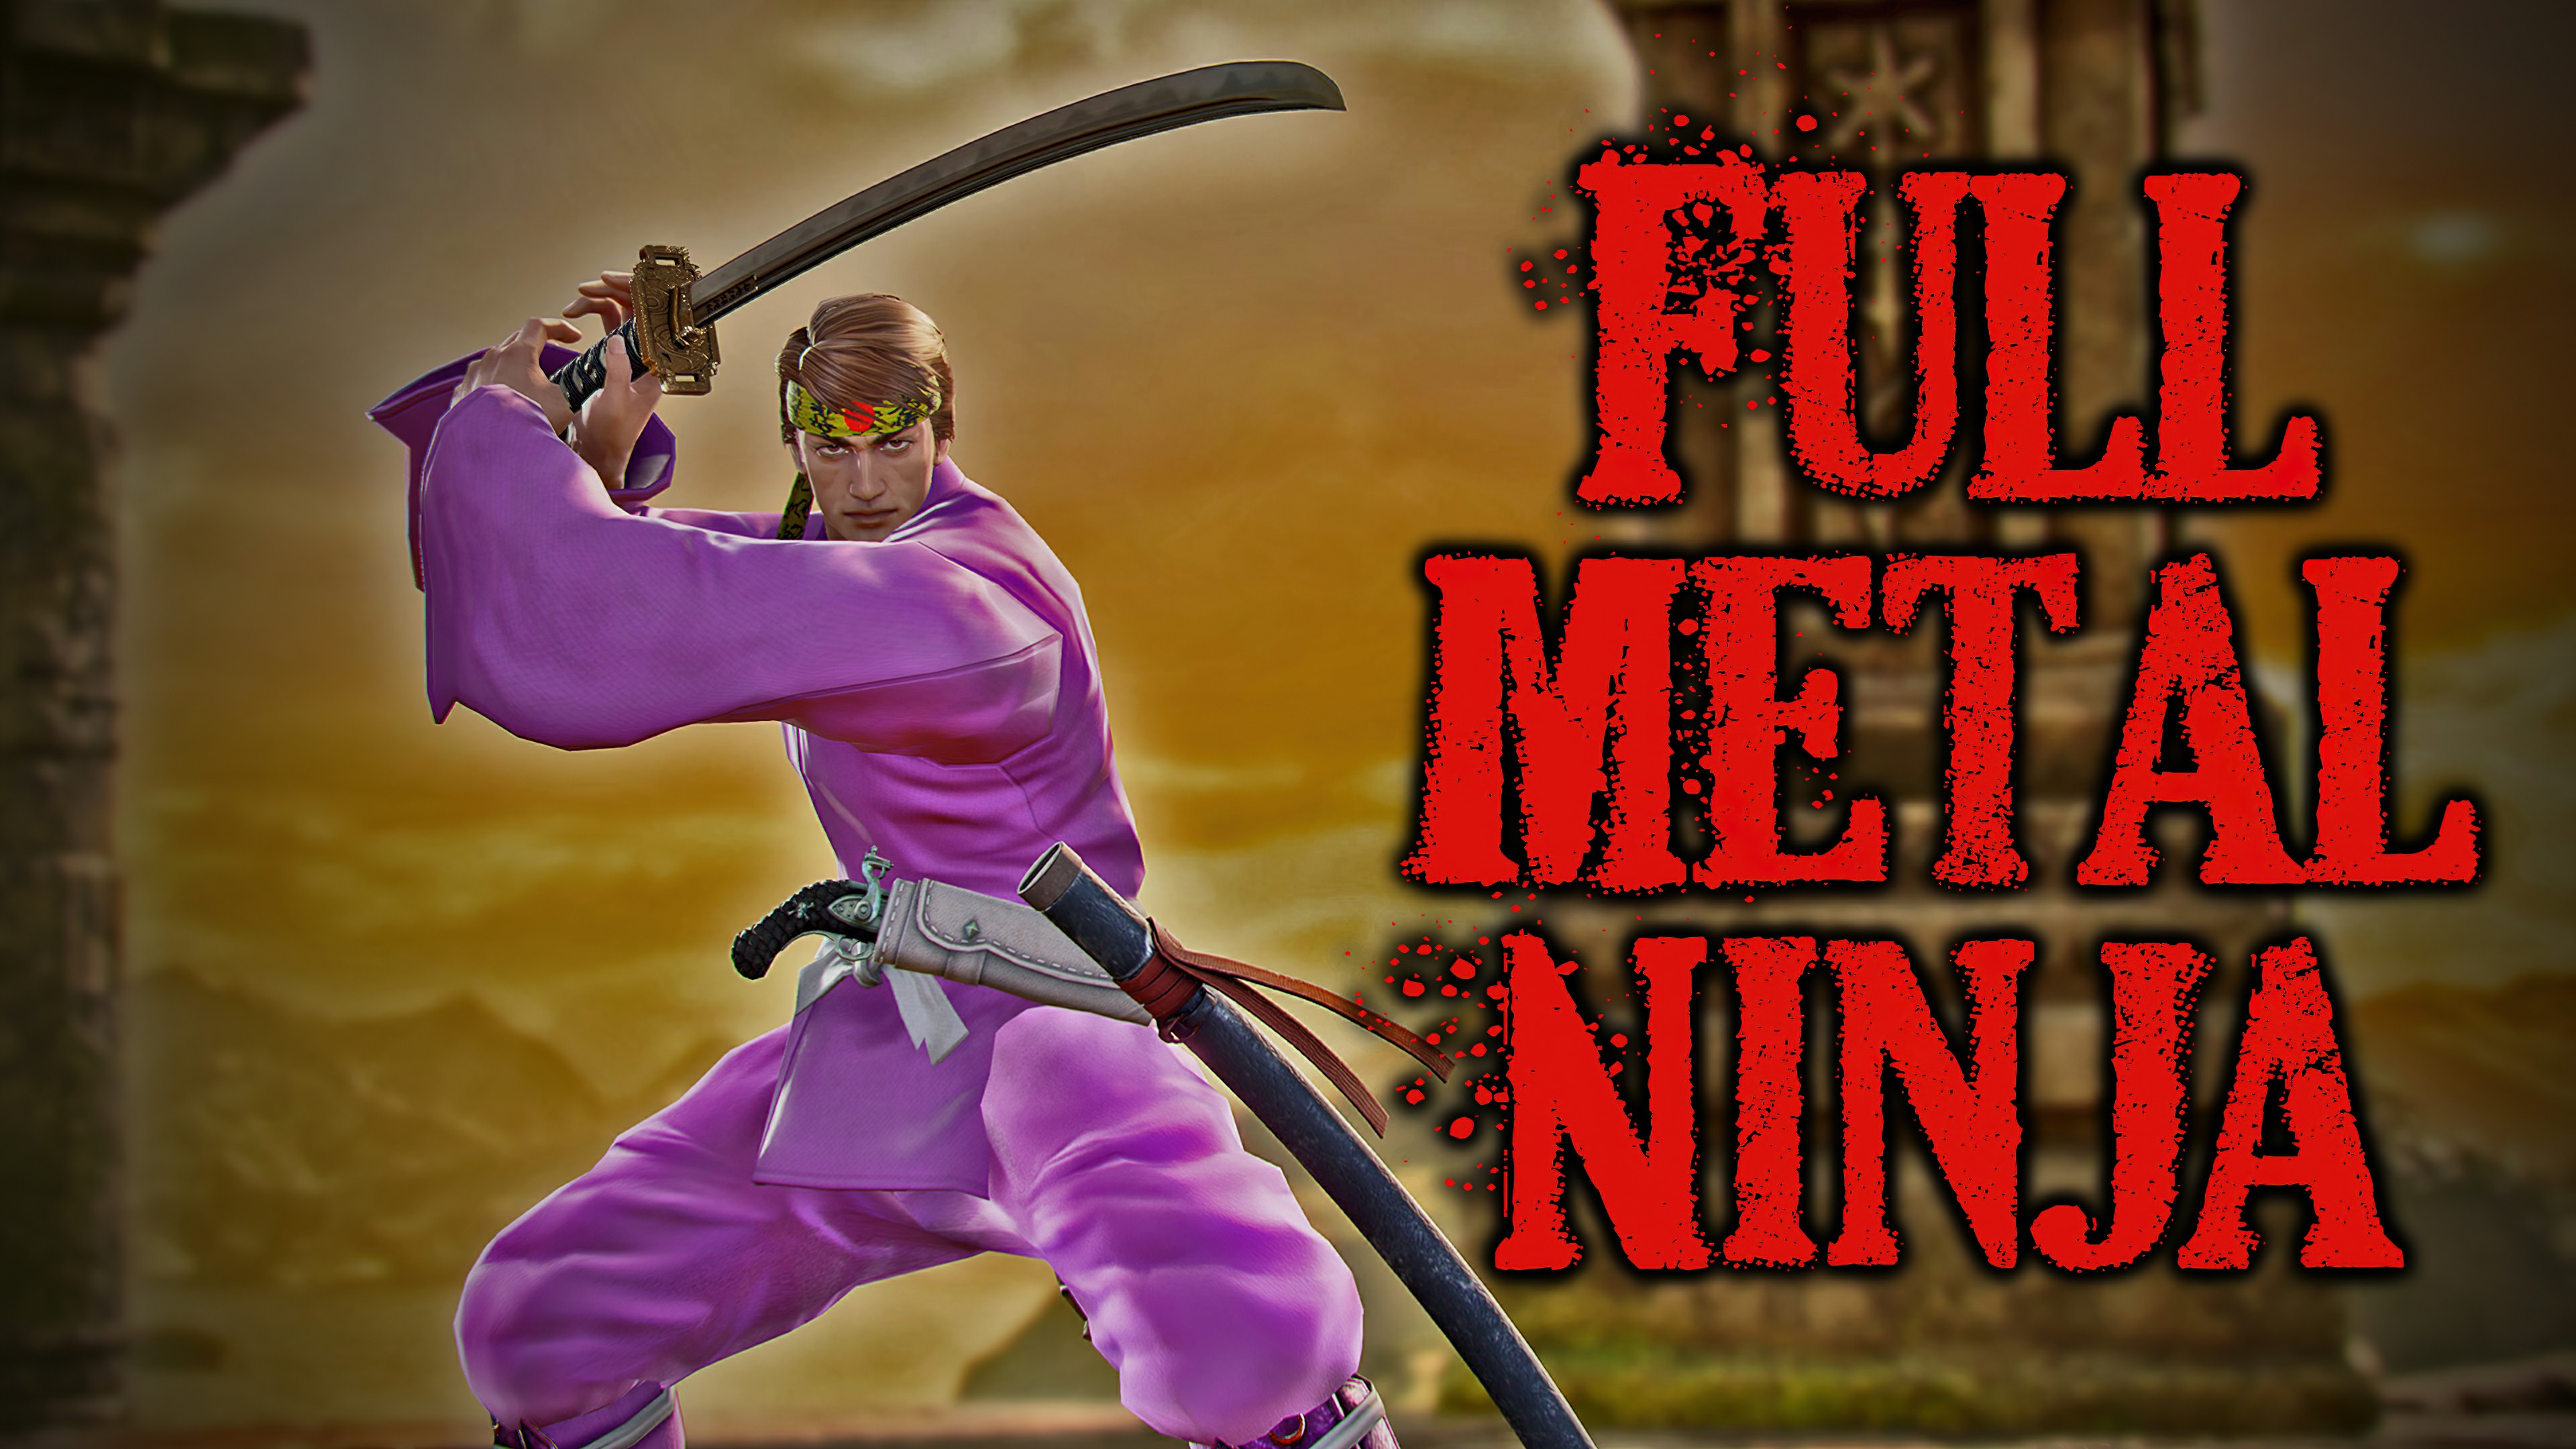 Full Metal Ninja (1989) Screenshot 3 